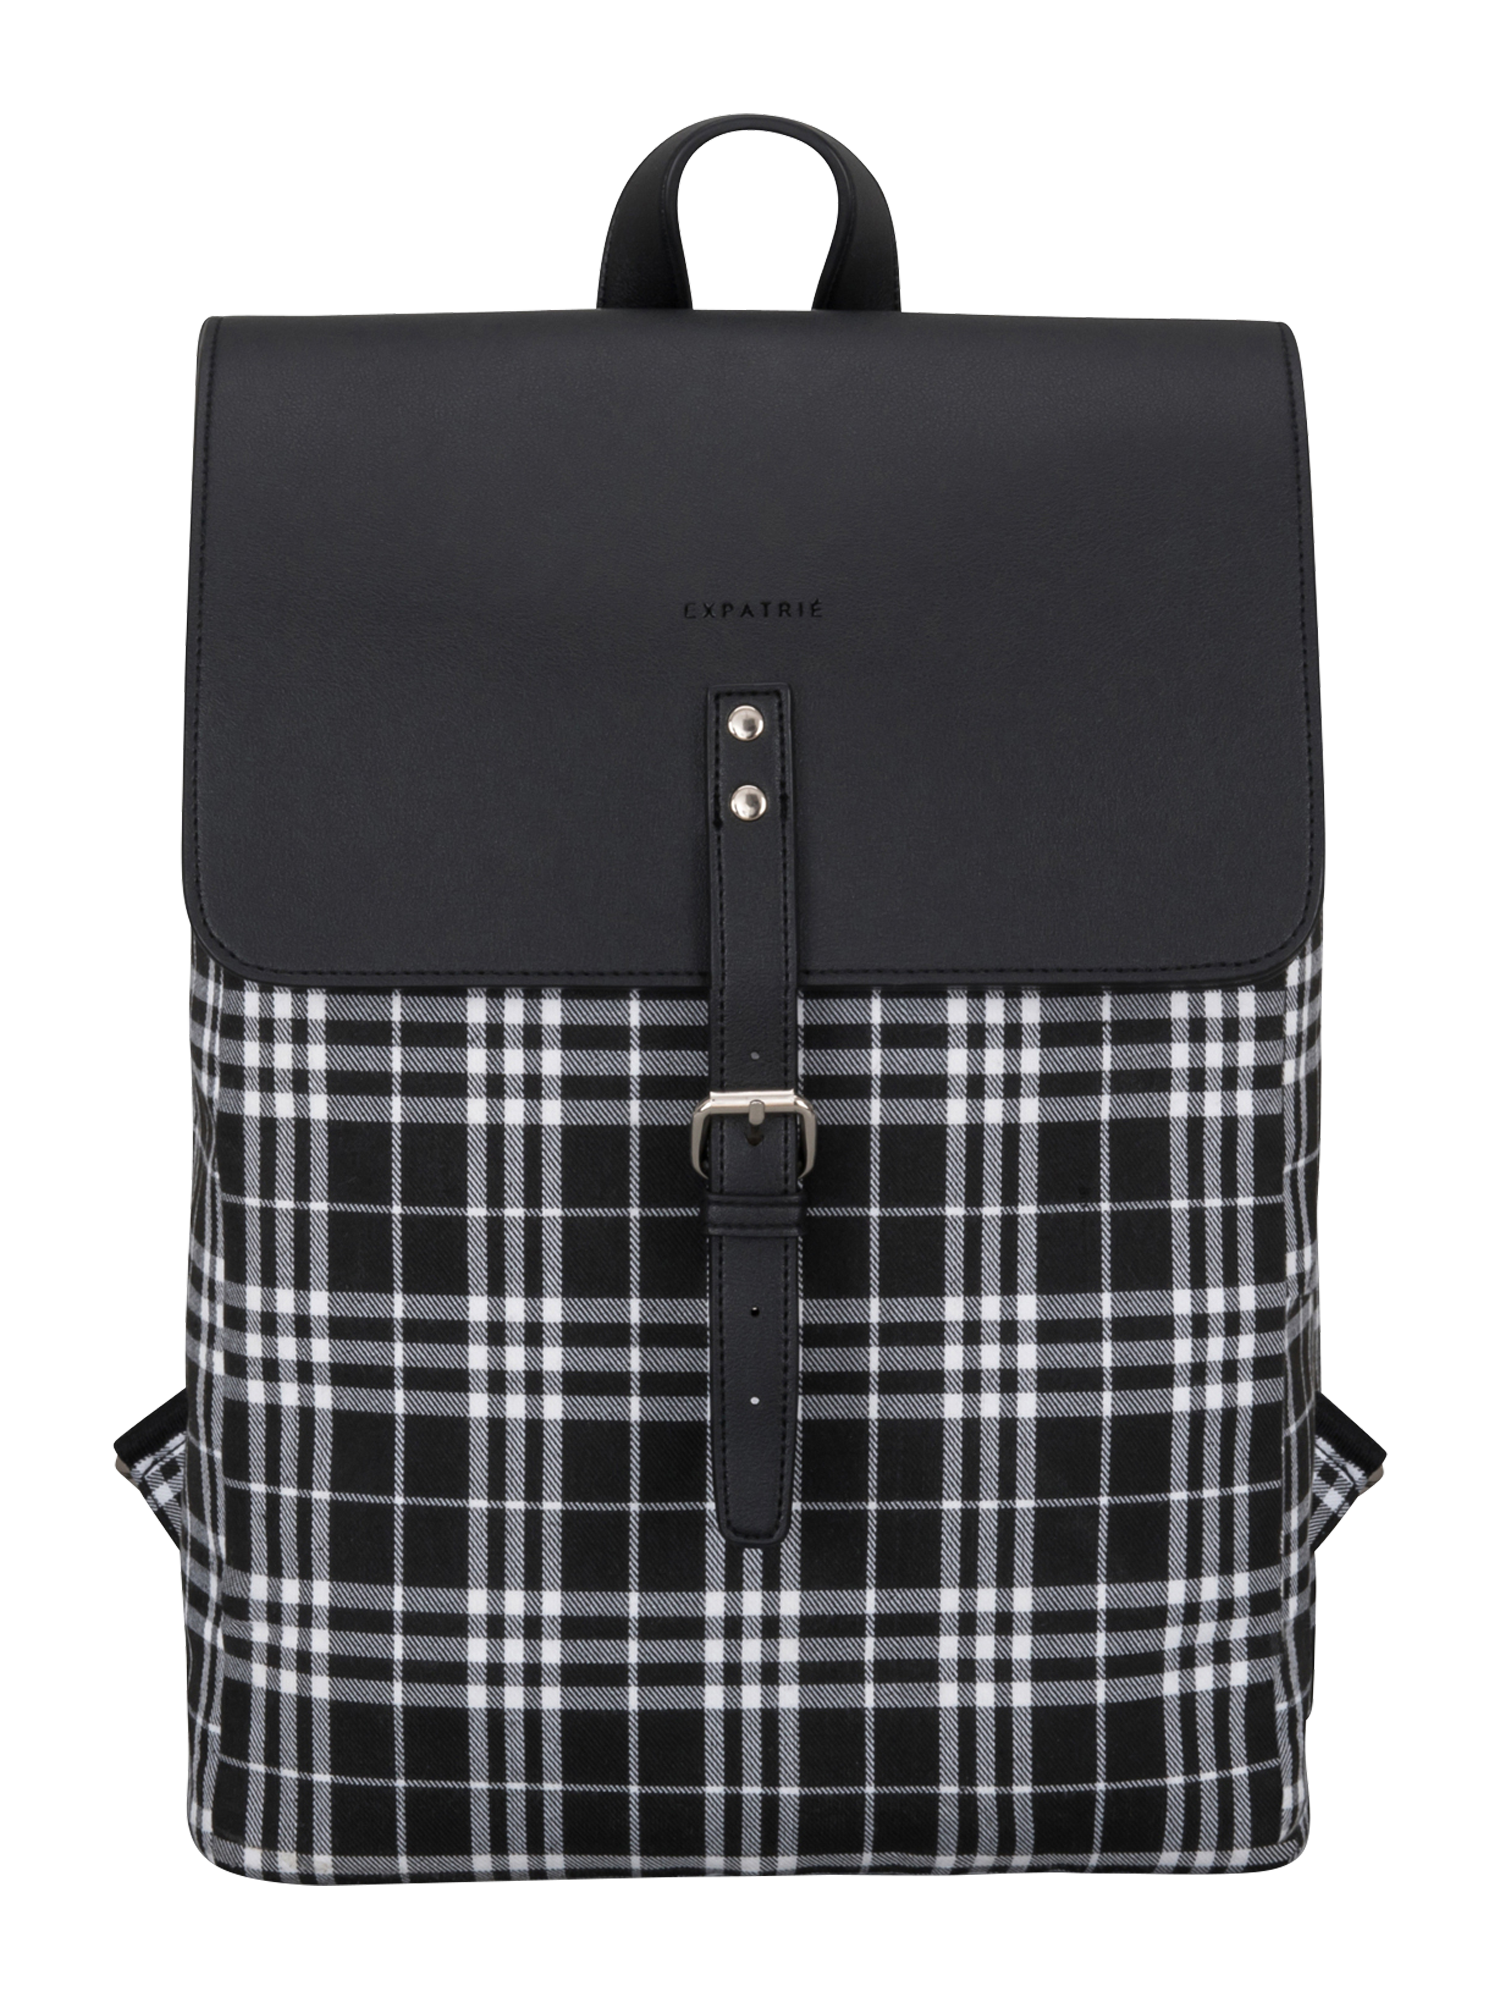 Torby & plecaki RM7vD Expatrié Plecak Anouk w kolorze Czarnym 